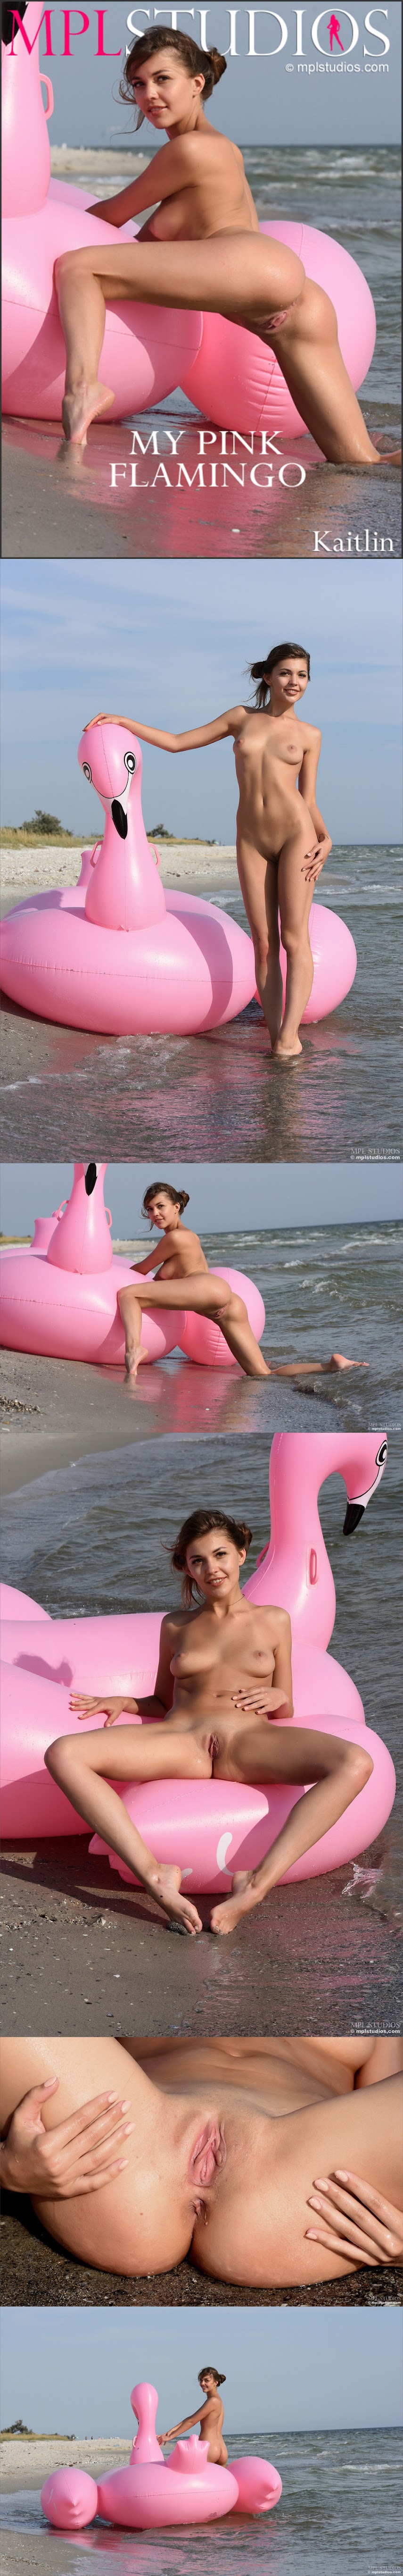 MPLS__20180727_Kaitlin_-_My_pink_flamingo.zip-jk- MPLS  20180727 Kaitlin - My pink flamingo